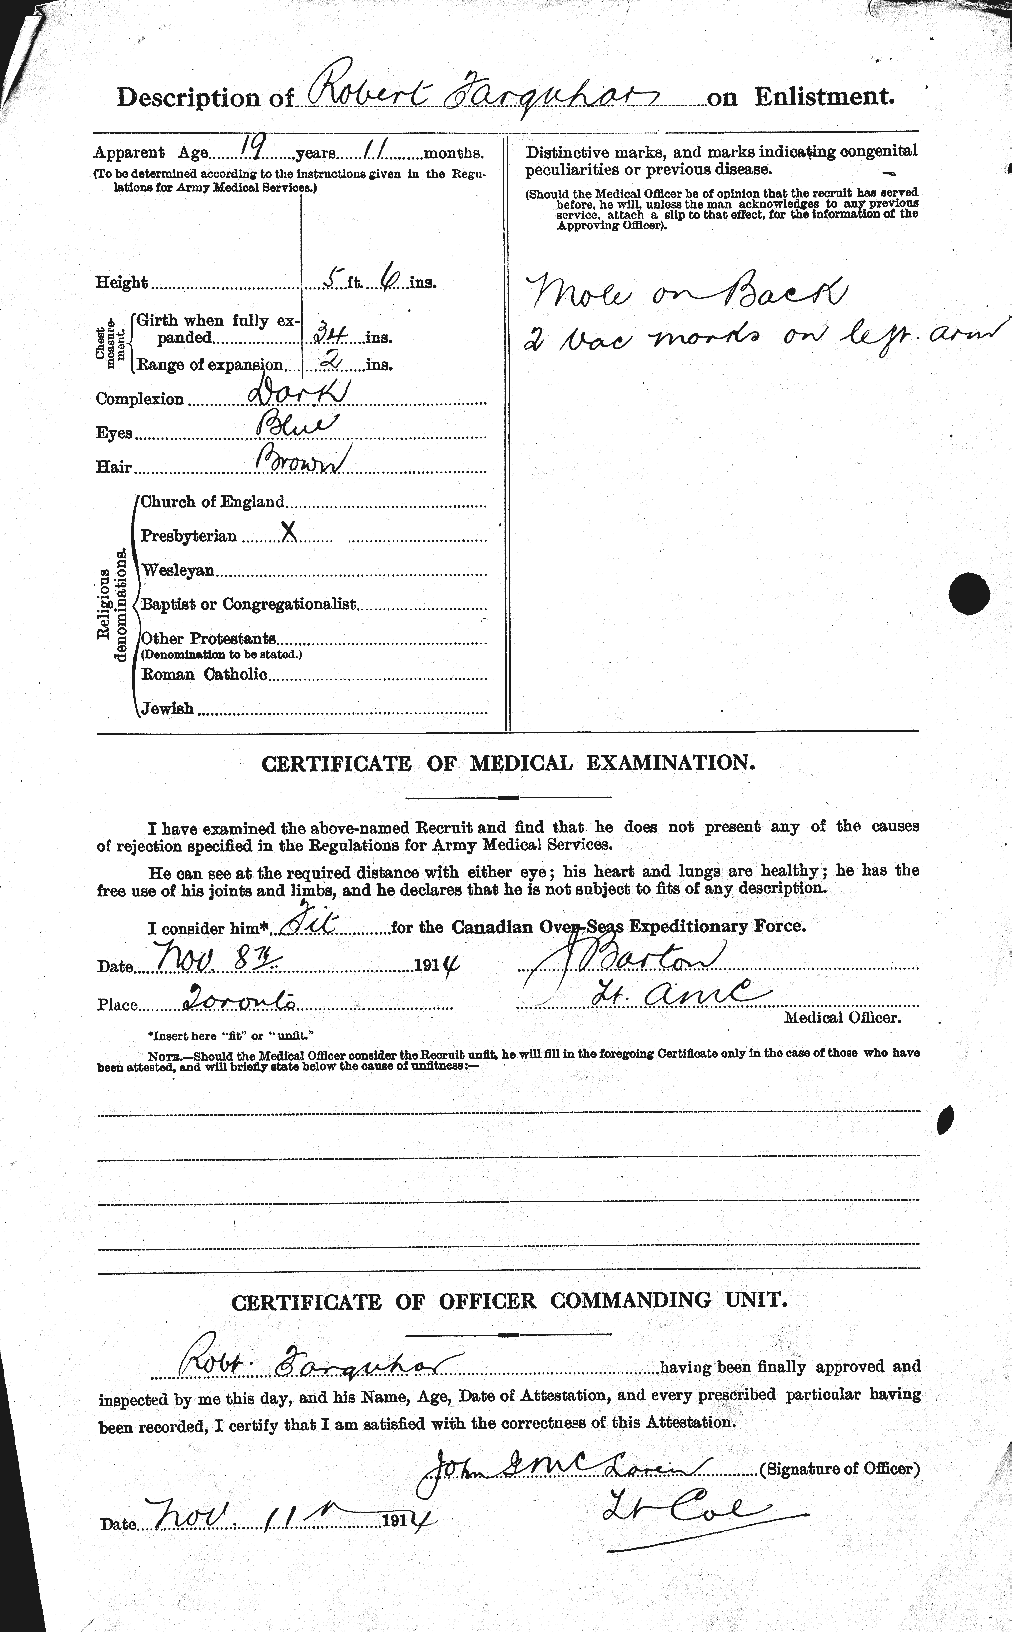 Dossiers du Personnel de la Première Guerre mondiale - CEC 318794b